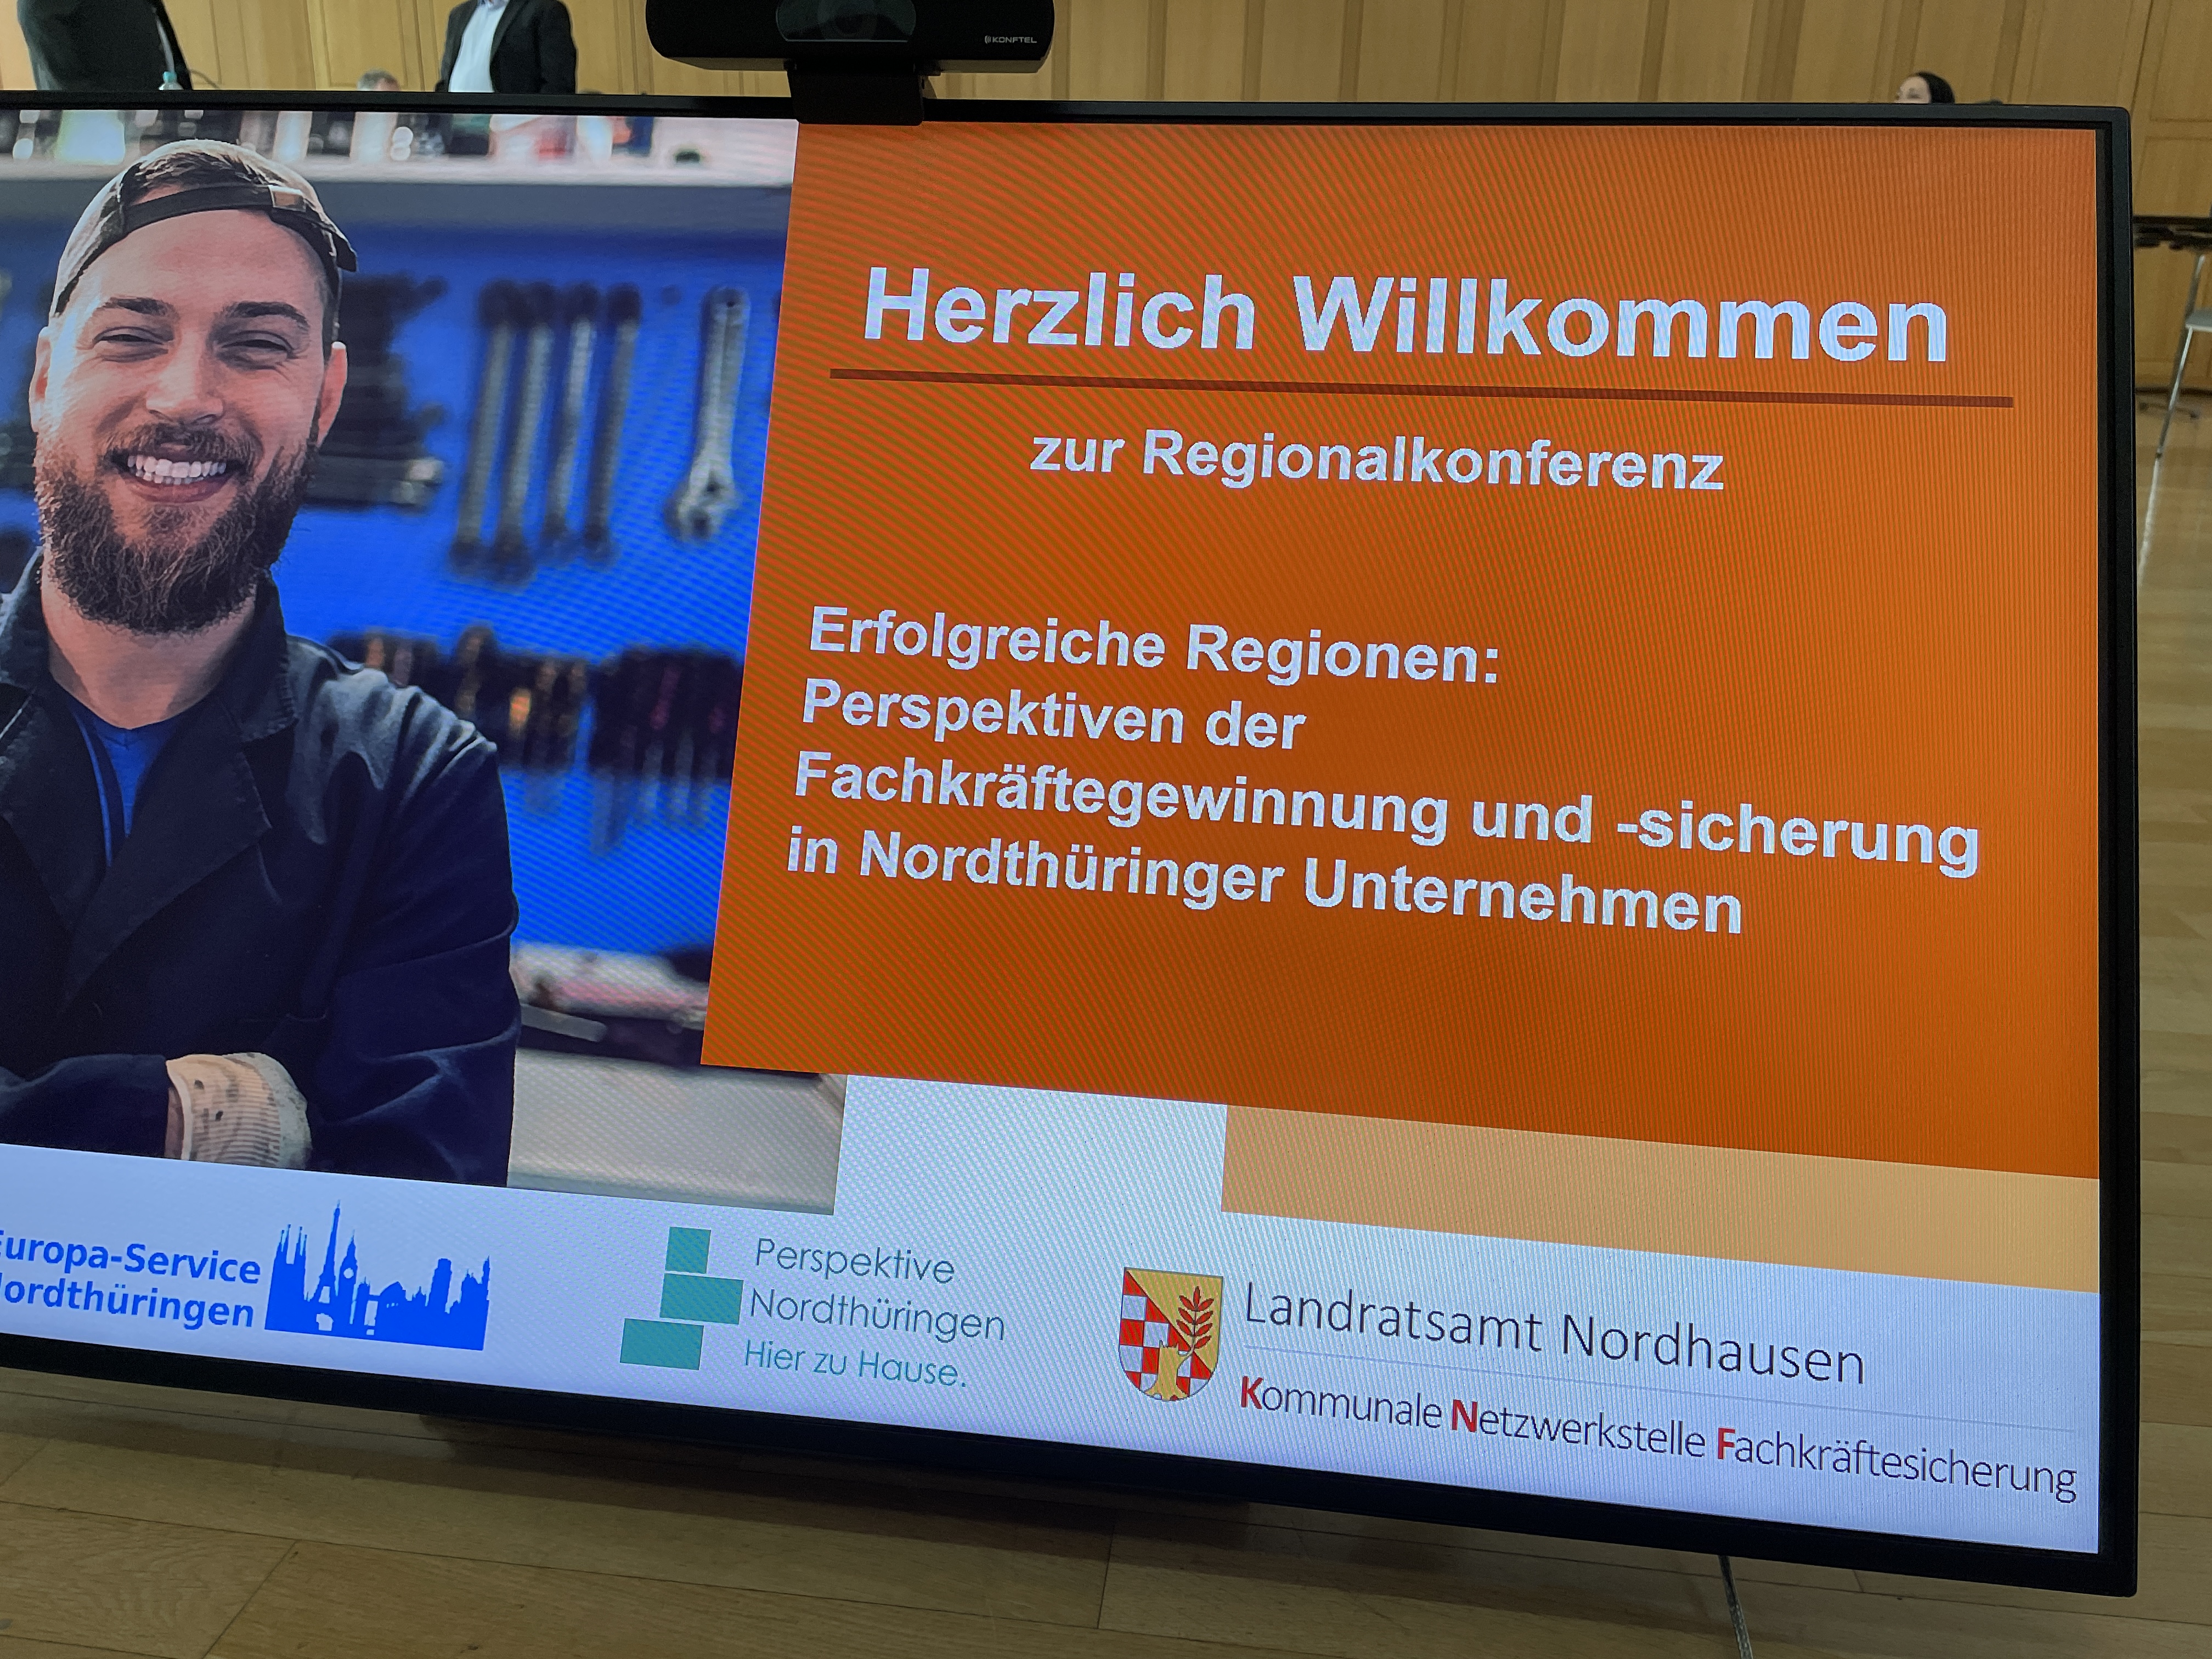 erste Regionalkonferenz für Nordthüringer Unternehmen im Bürgerhaus Nordhausen